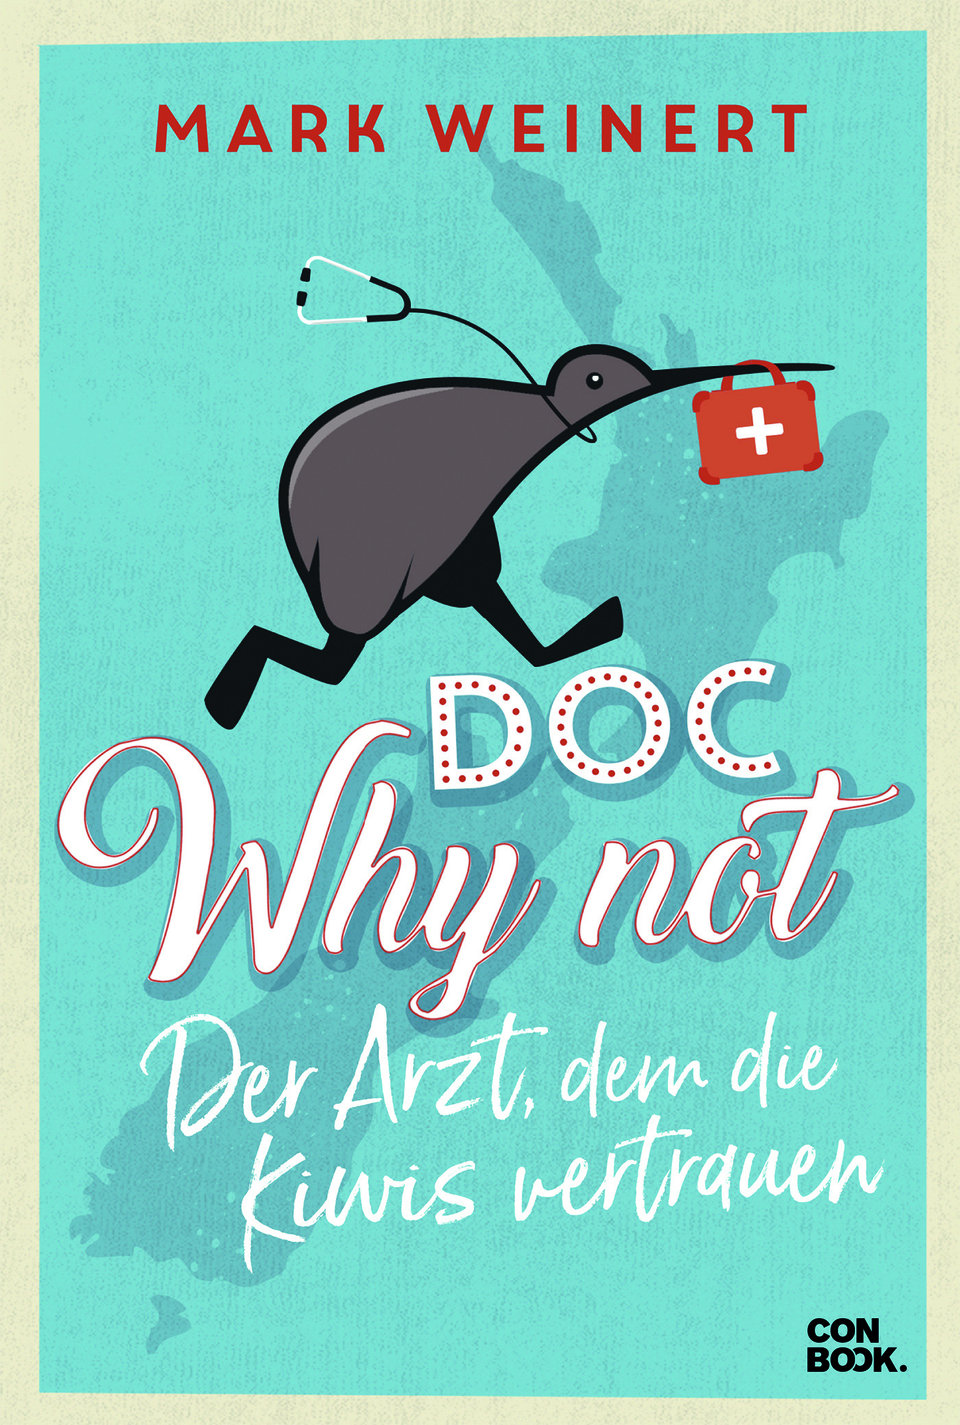 Mark Weinert: Doc Why Not: Der Arzt, dem die Kiwis vertrauen, Conbook Verlag, ISBN-13: 978-3958893160, Euro 9,95